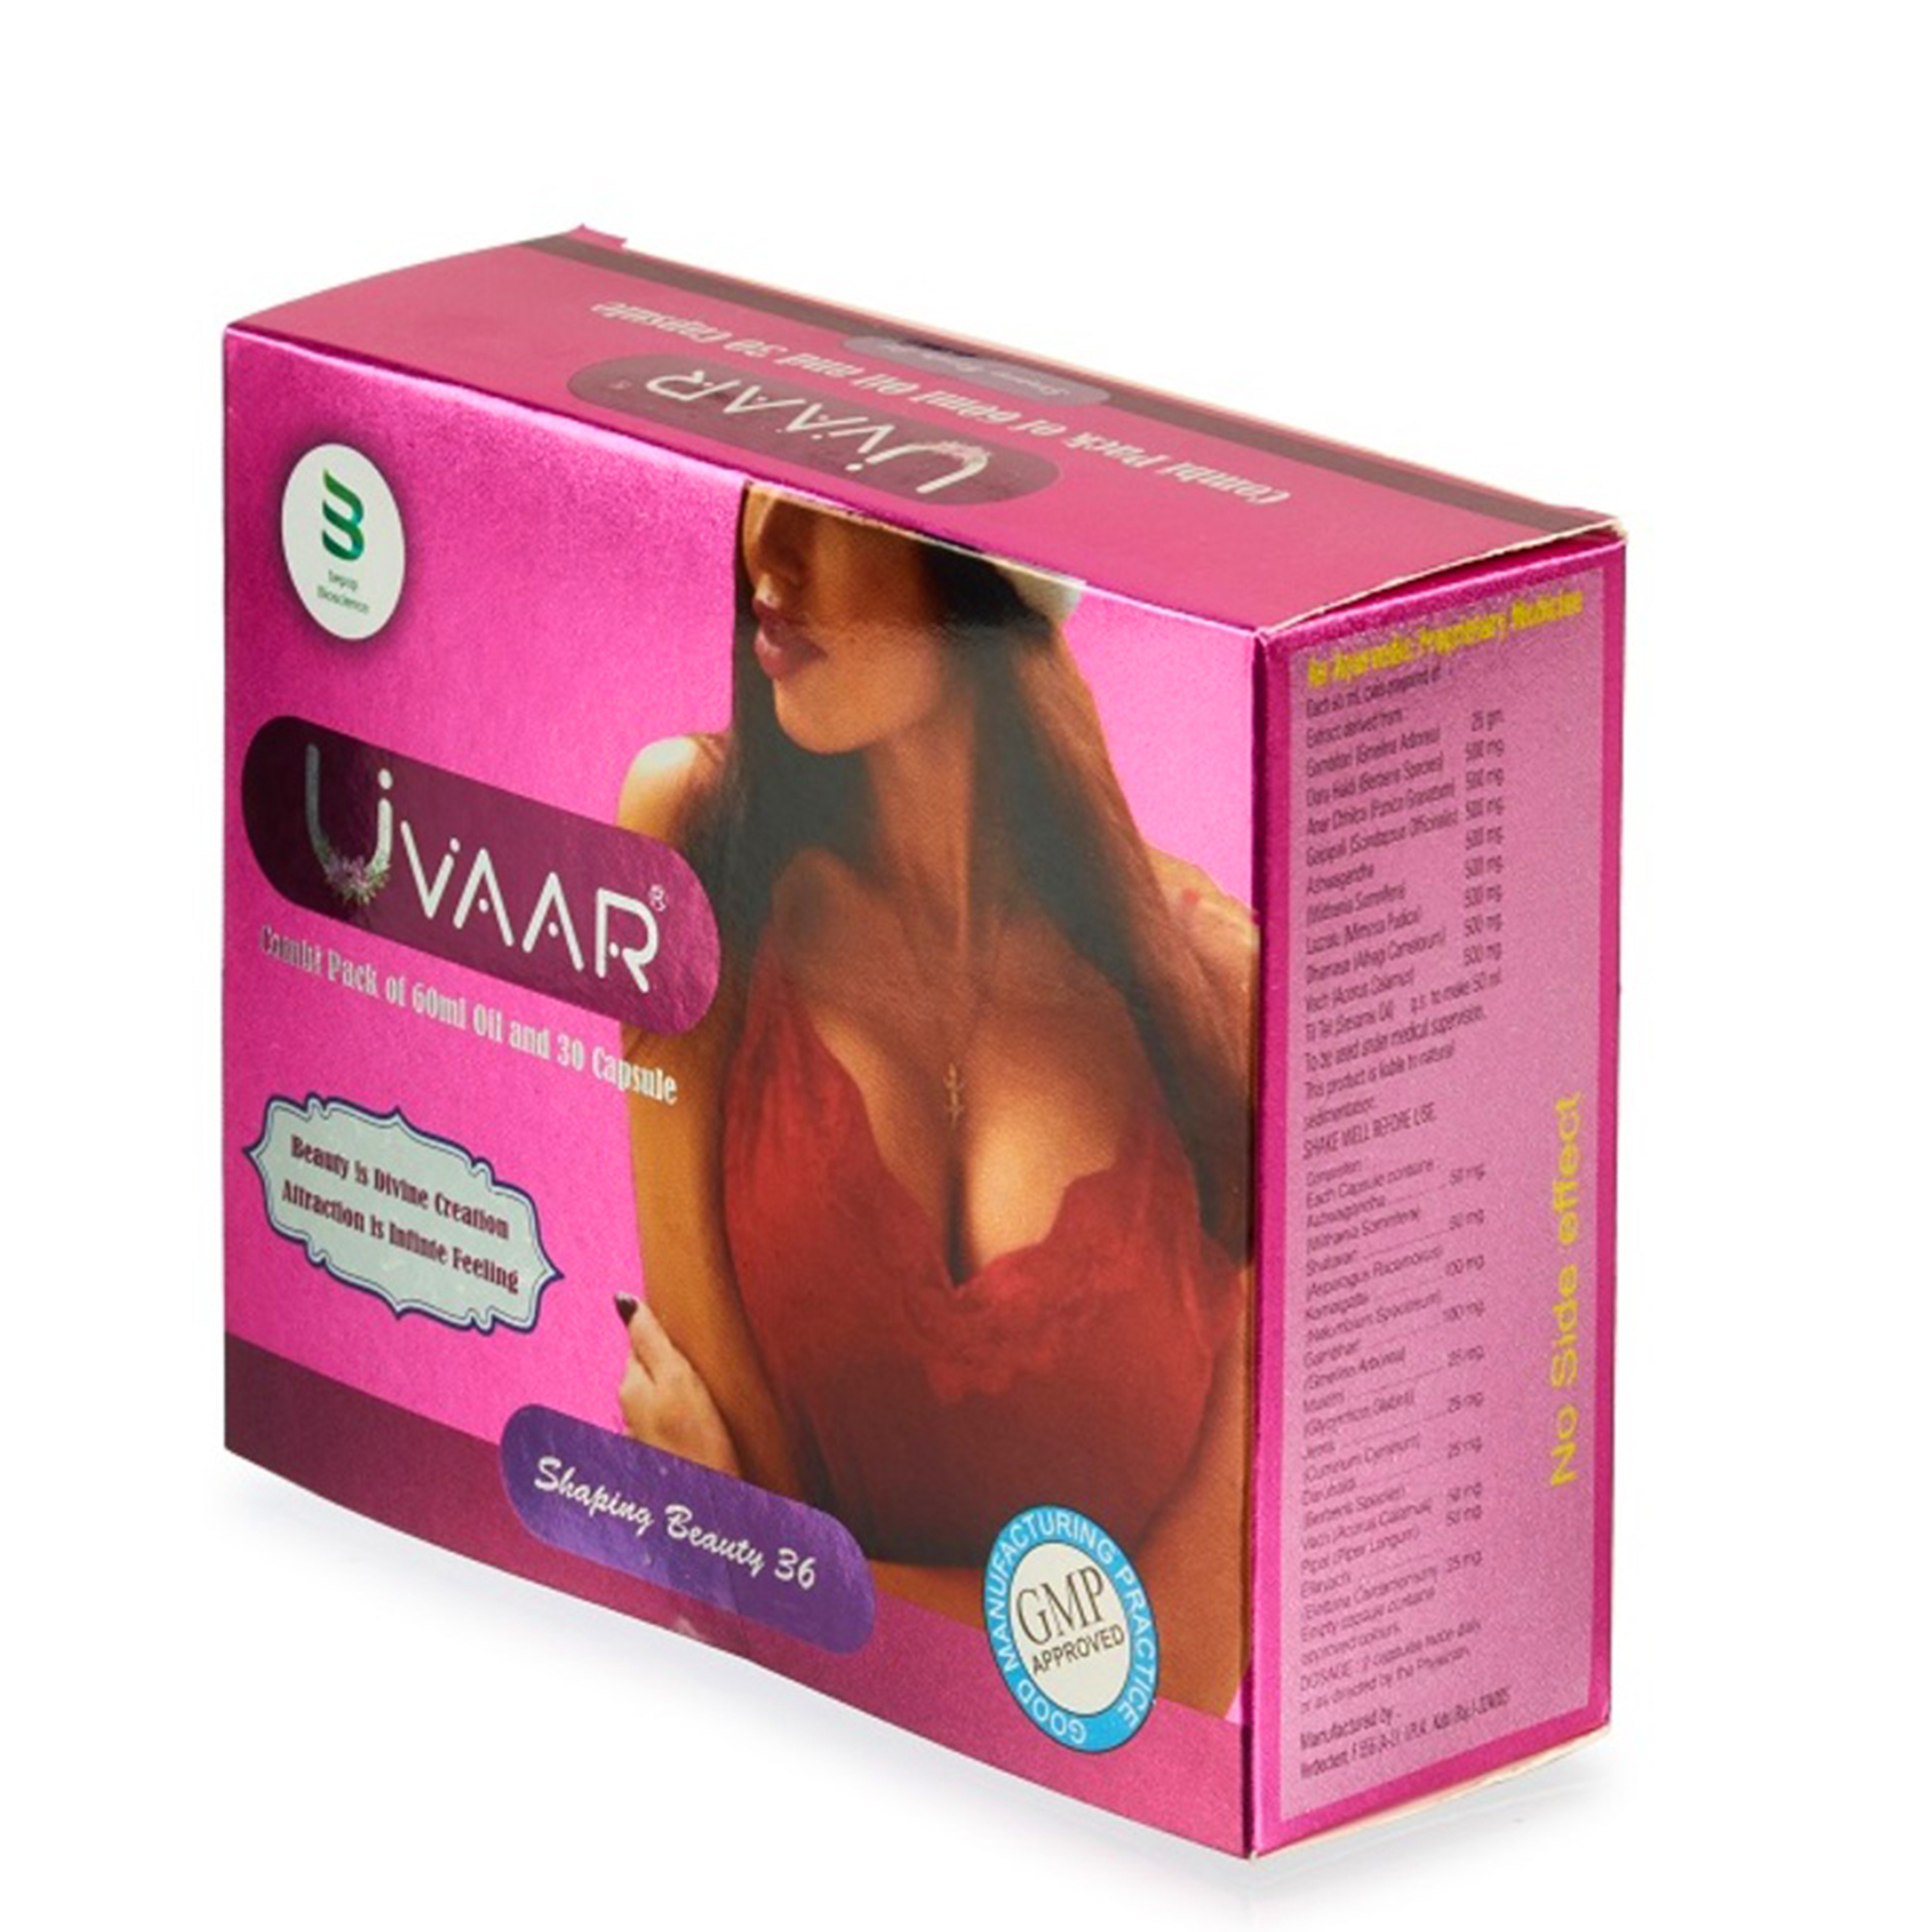 Buy Uvaar Breast Oil for women 60 ML & 30 Capsules at Best Price Online